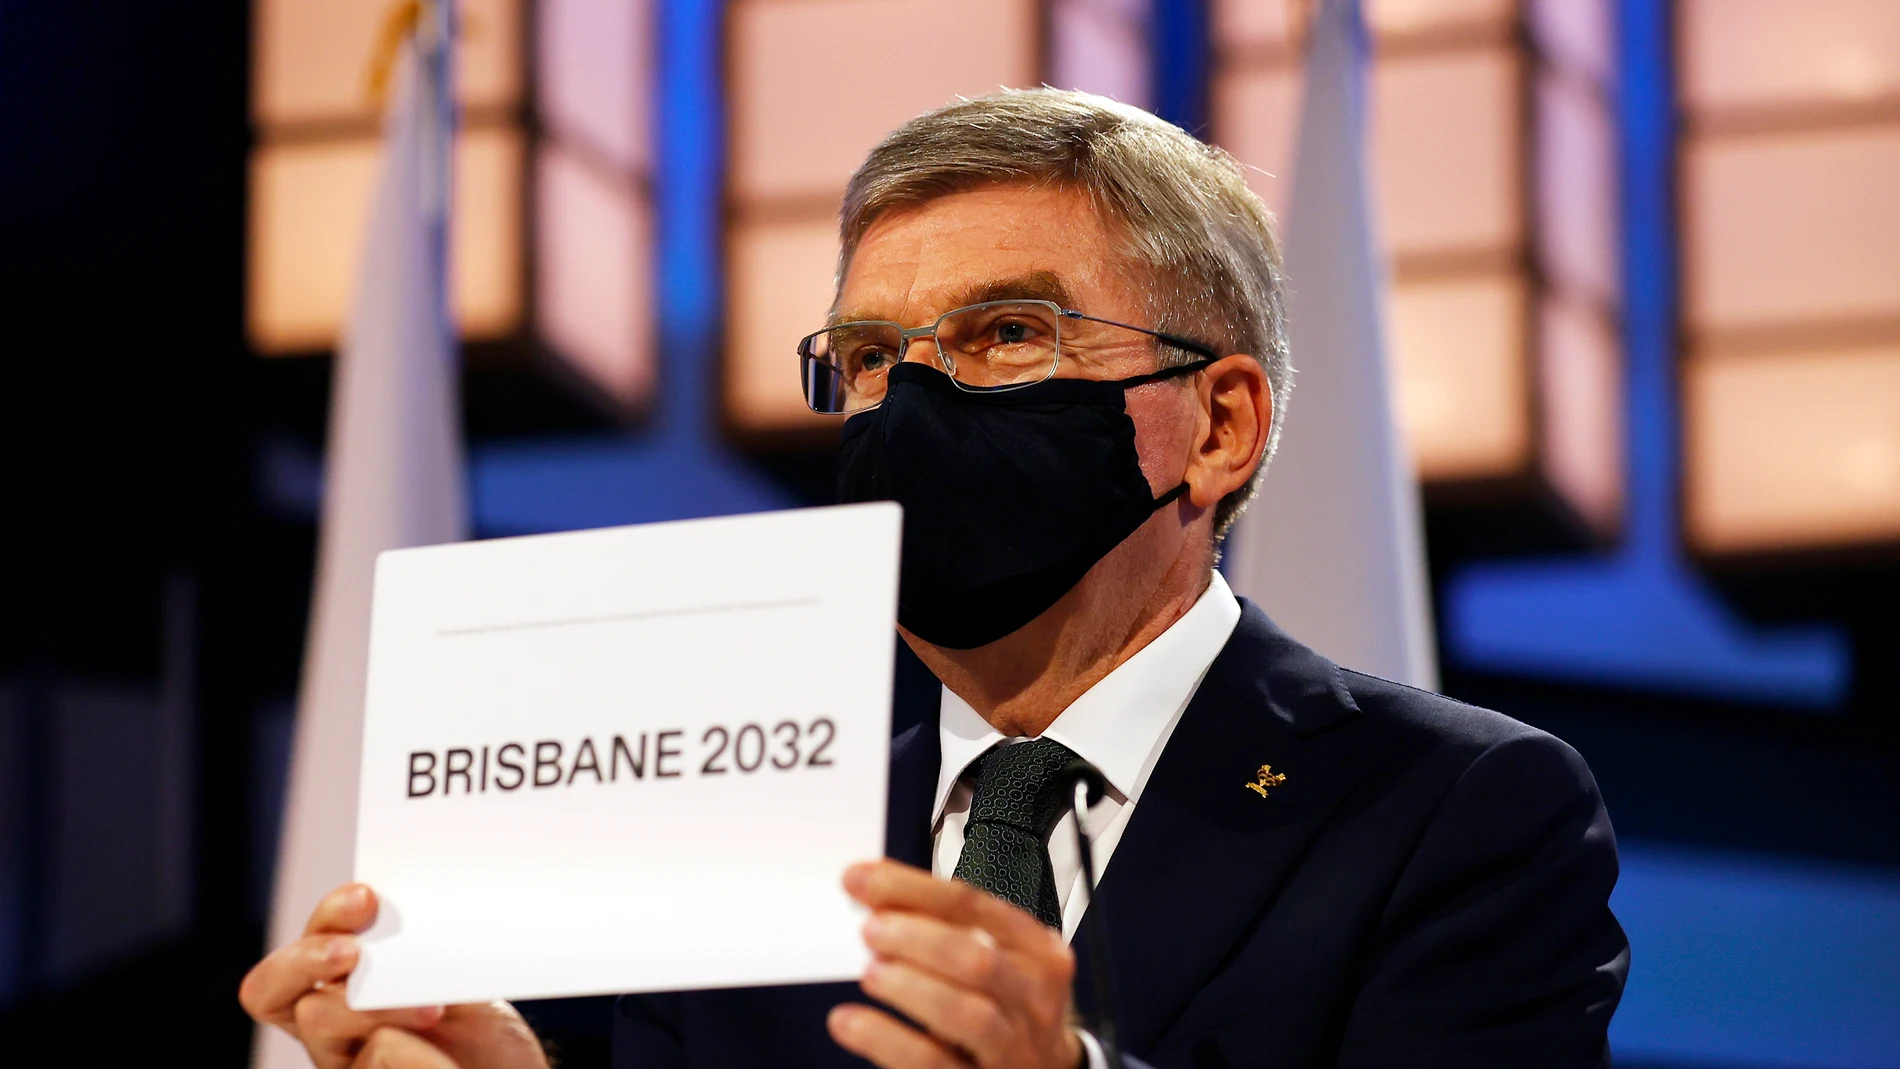 Brisbane 2032, confirmada para acoger los JJOO